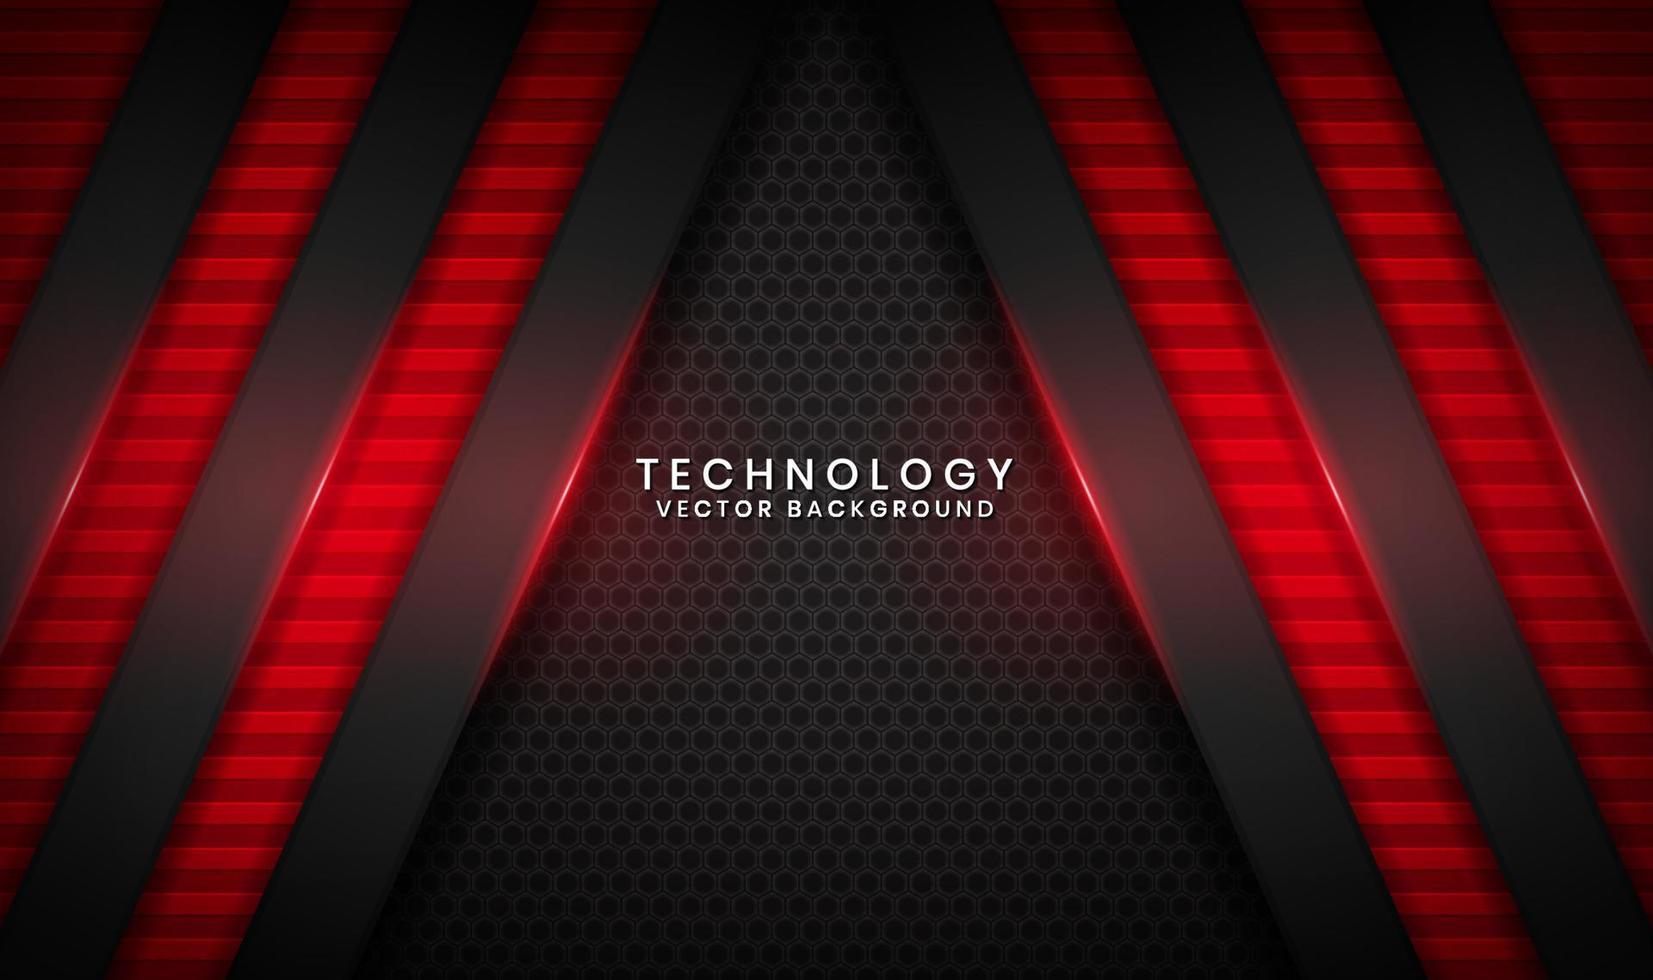 Capa de superposición de fondo abstracto de tecnología negra 3d en el espacio oscuro con decoración de efecto de línea de luz roja. elemento de diseño gráfico concepto de estilo futuro para volante, pancarta, folleto o página de inicio vector